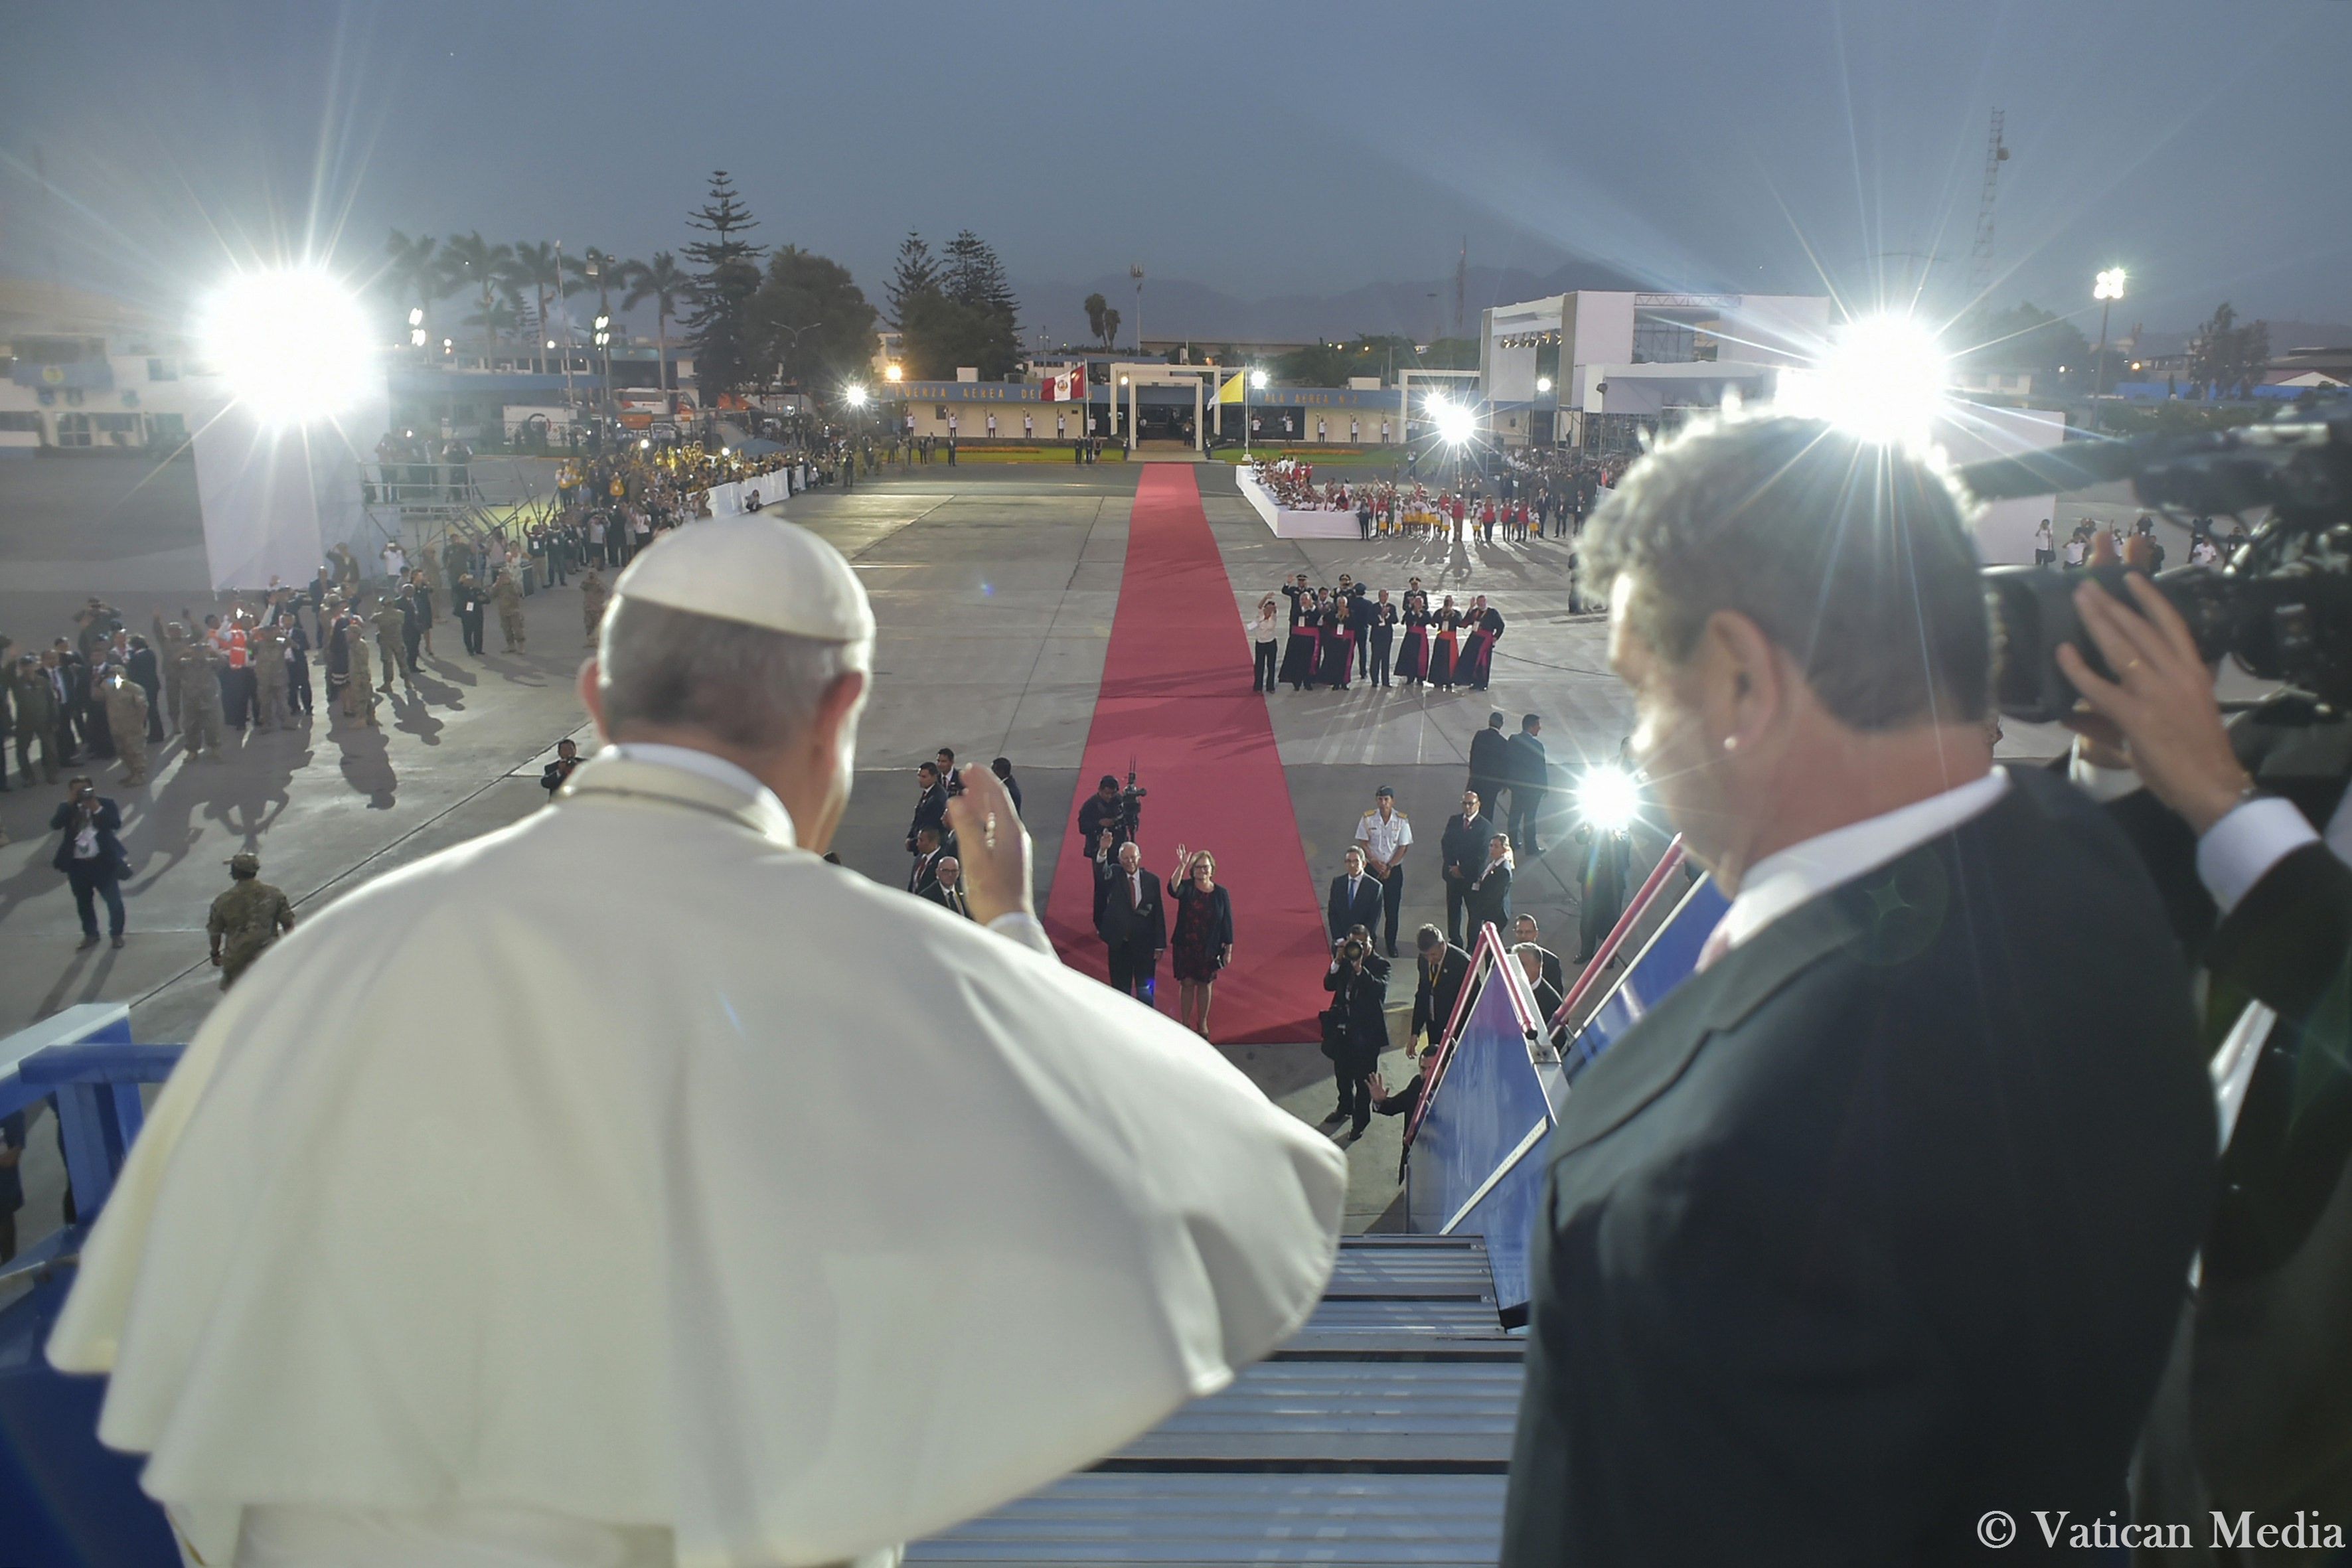 Adieux à l'aéroport Chavez de Lima (Pérou) @ Vatican Media